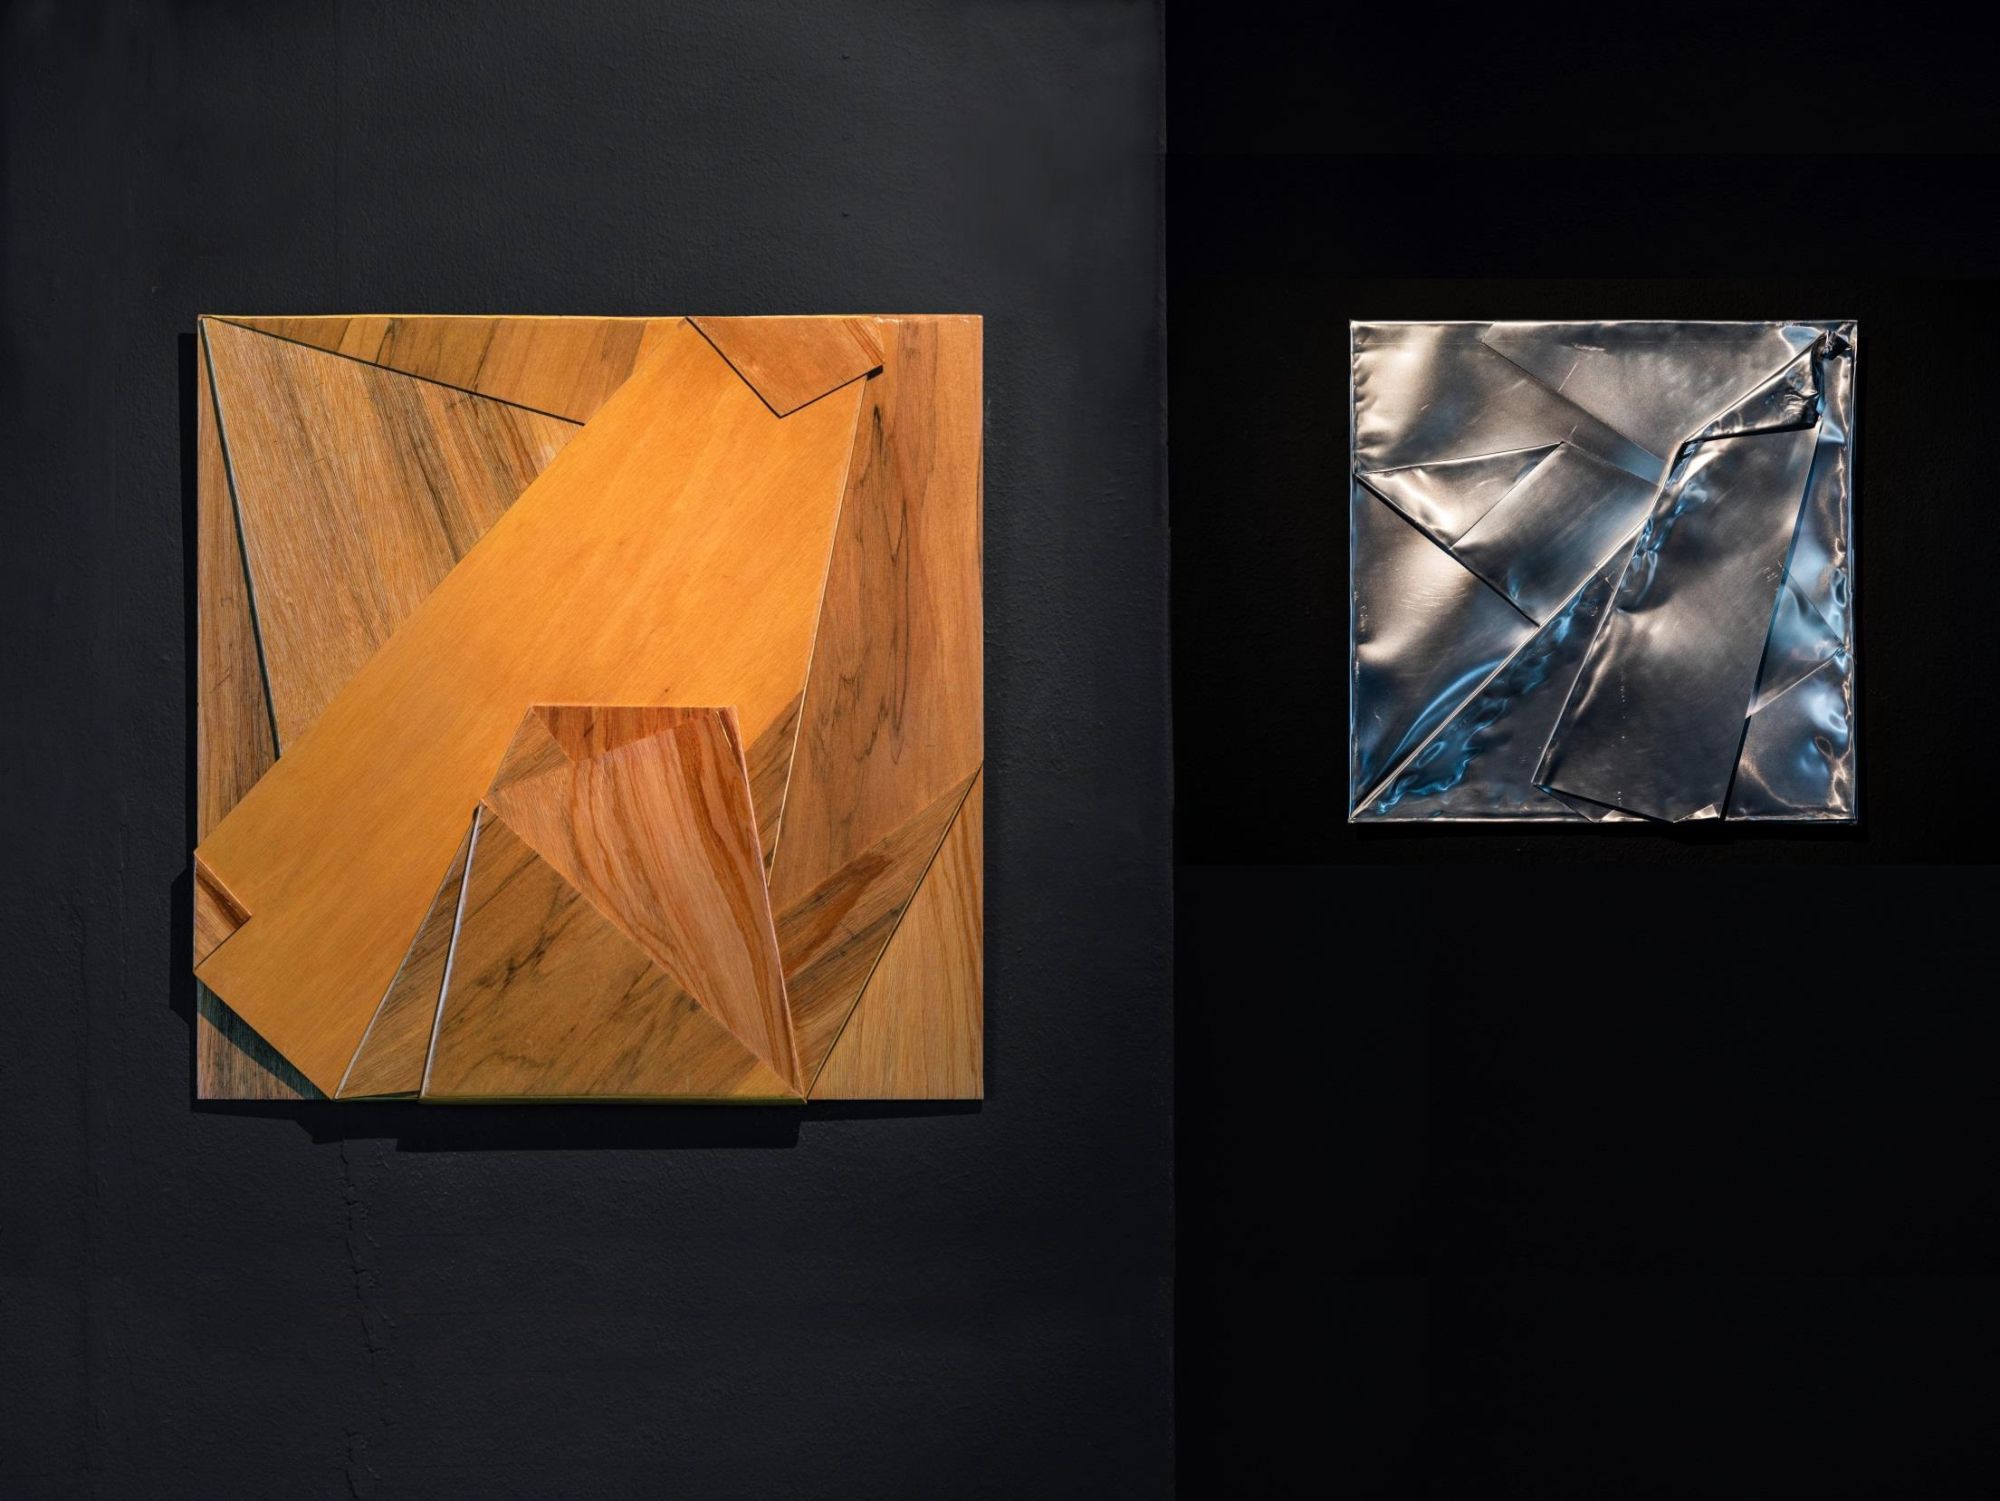 리사이징(Resizing), 81x81cm(좌), 50x50cm(우), 나무합판, 알루미늄, 2019